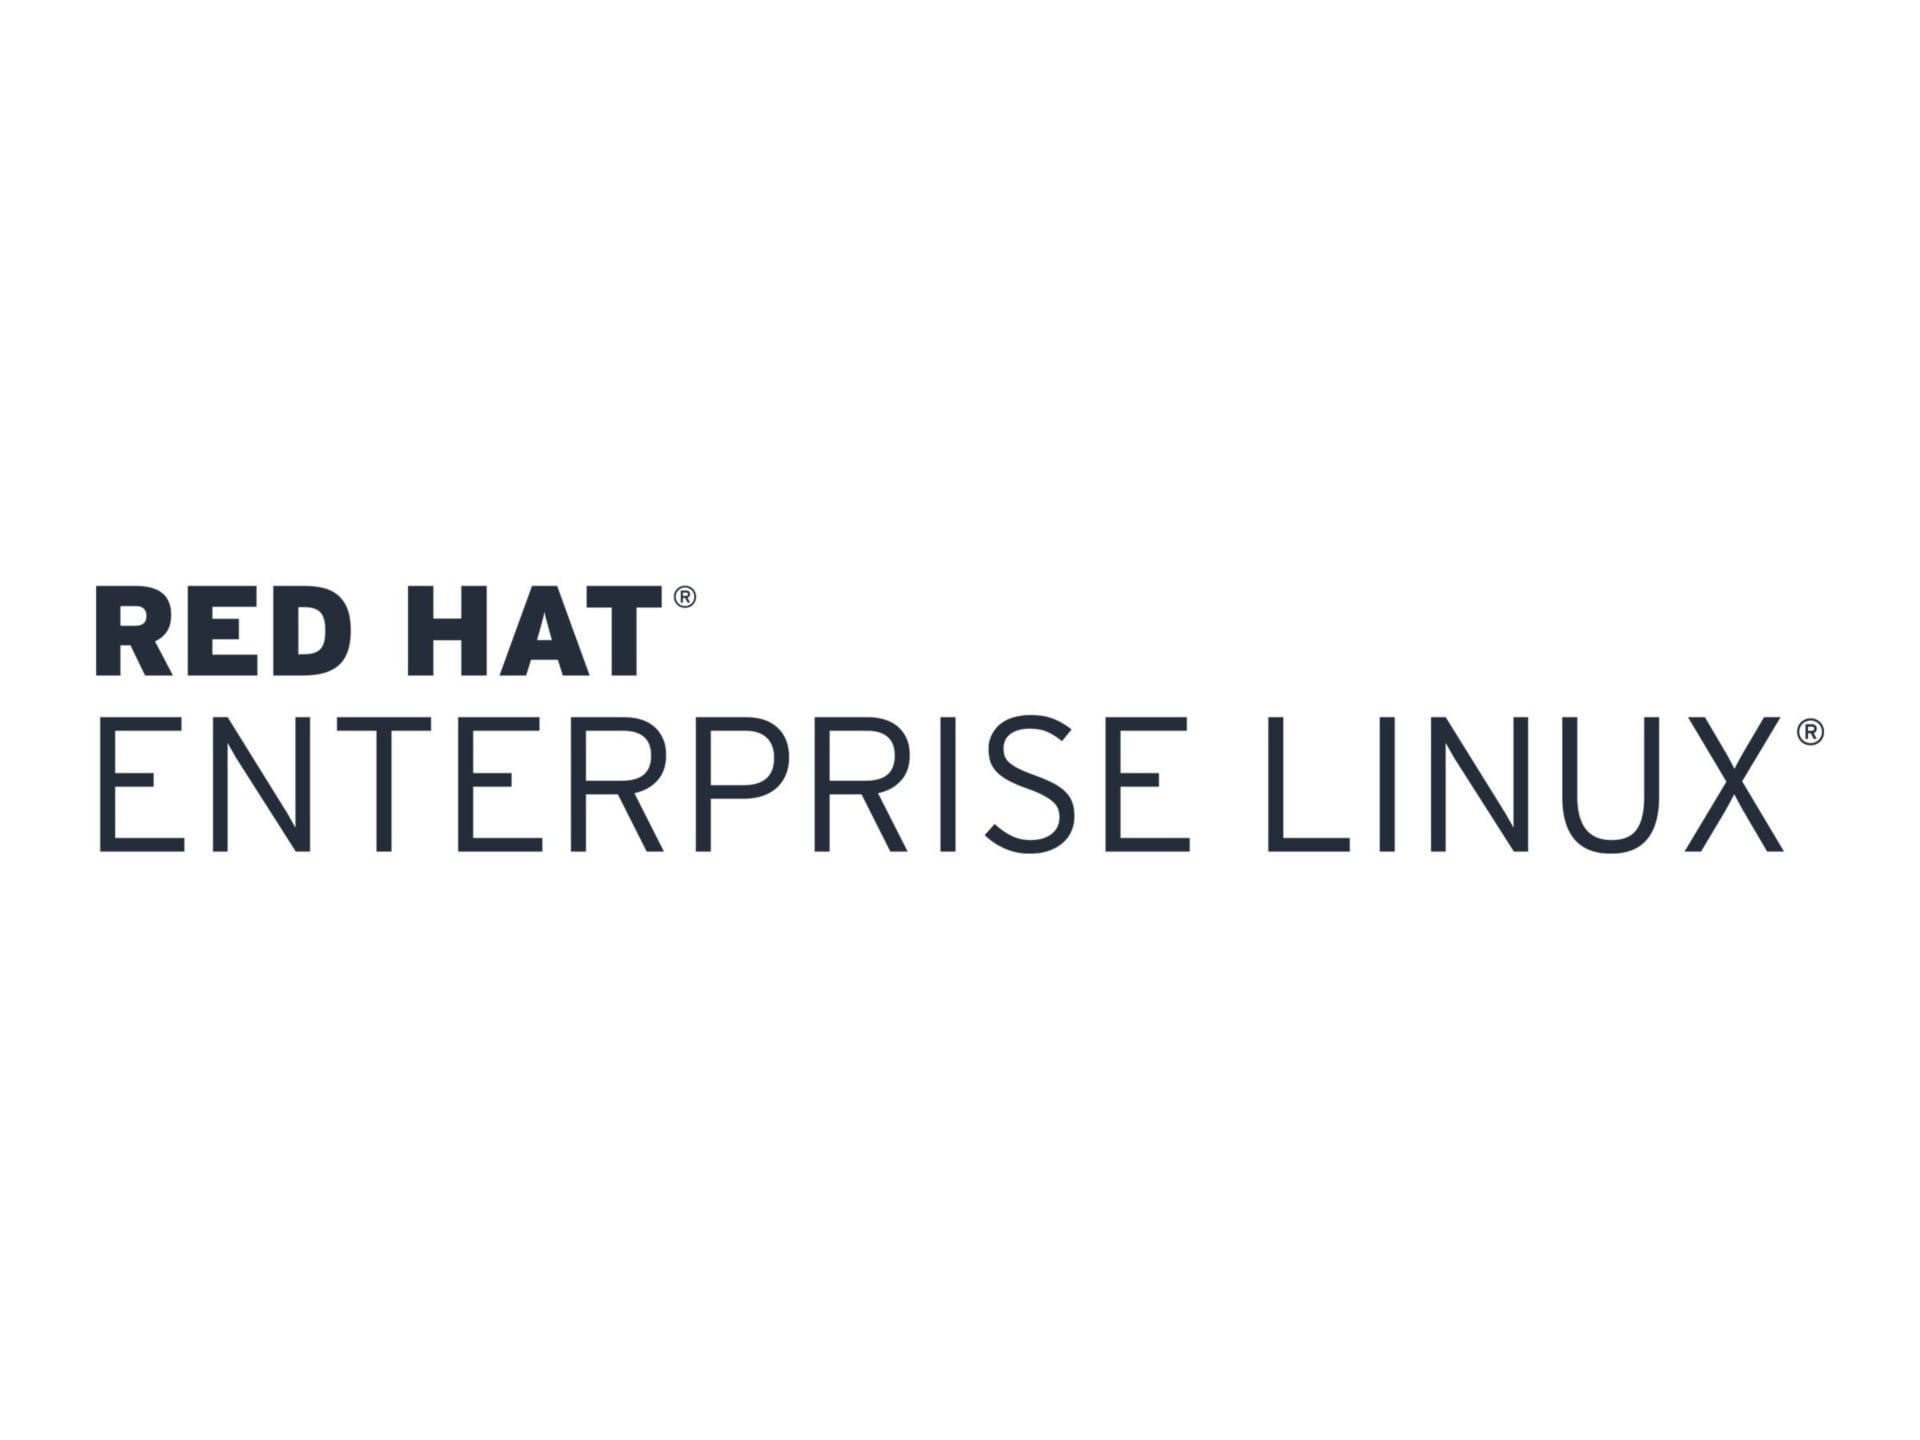 Red Hat Enterprise Linux Server - premium subscription - 2 sockets, 2 guest